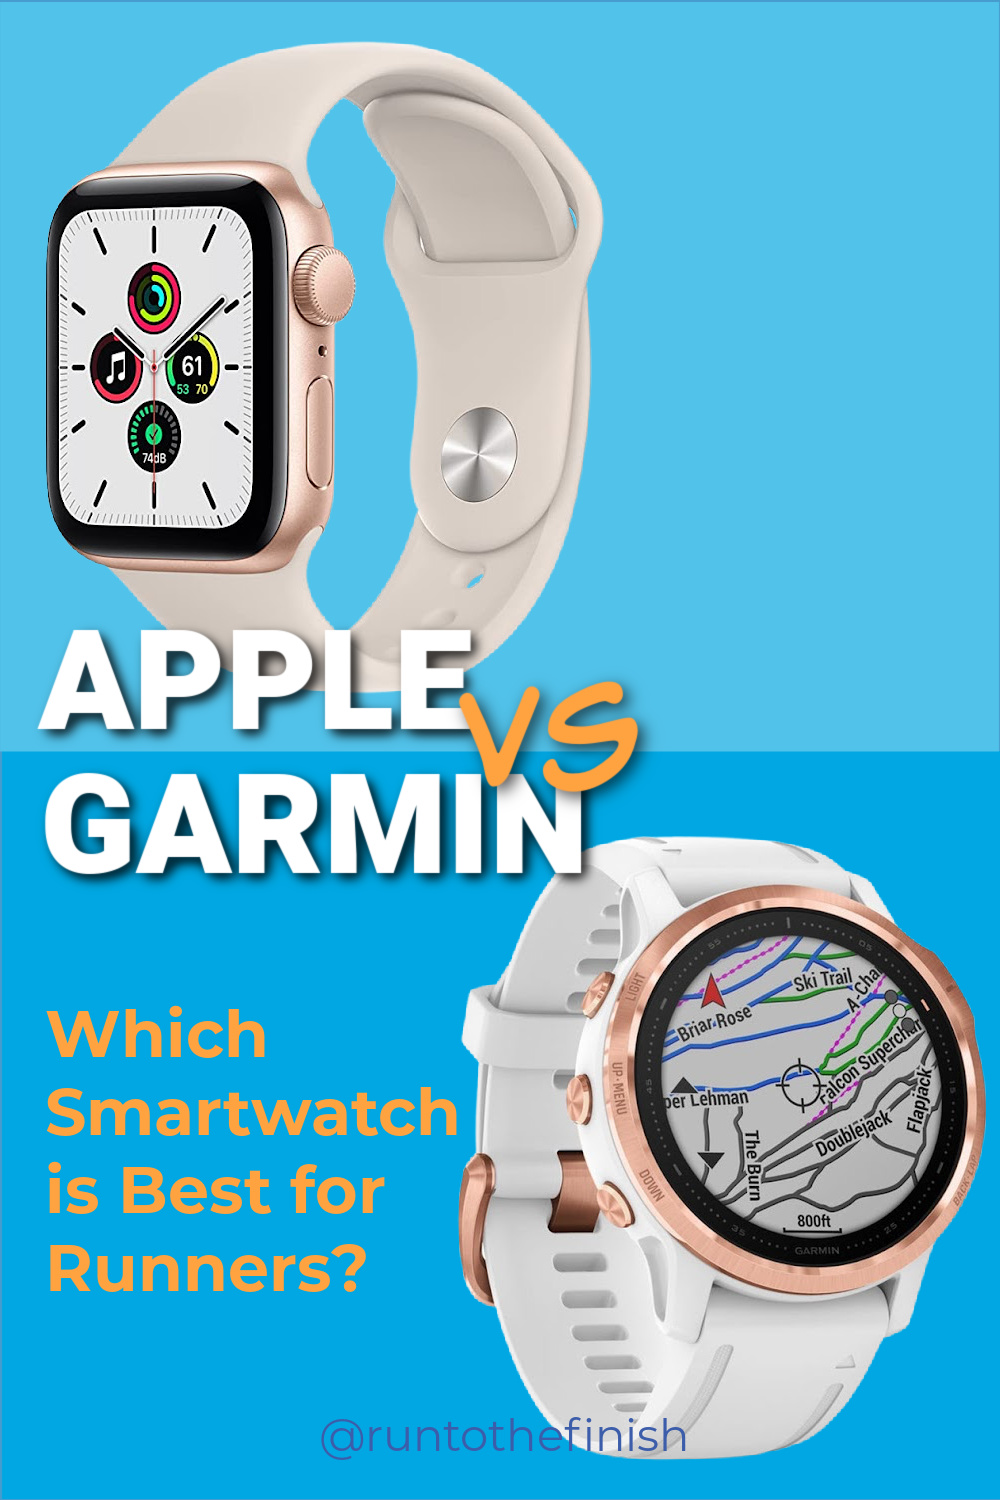 Apple Watch vs Garmin for Running